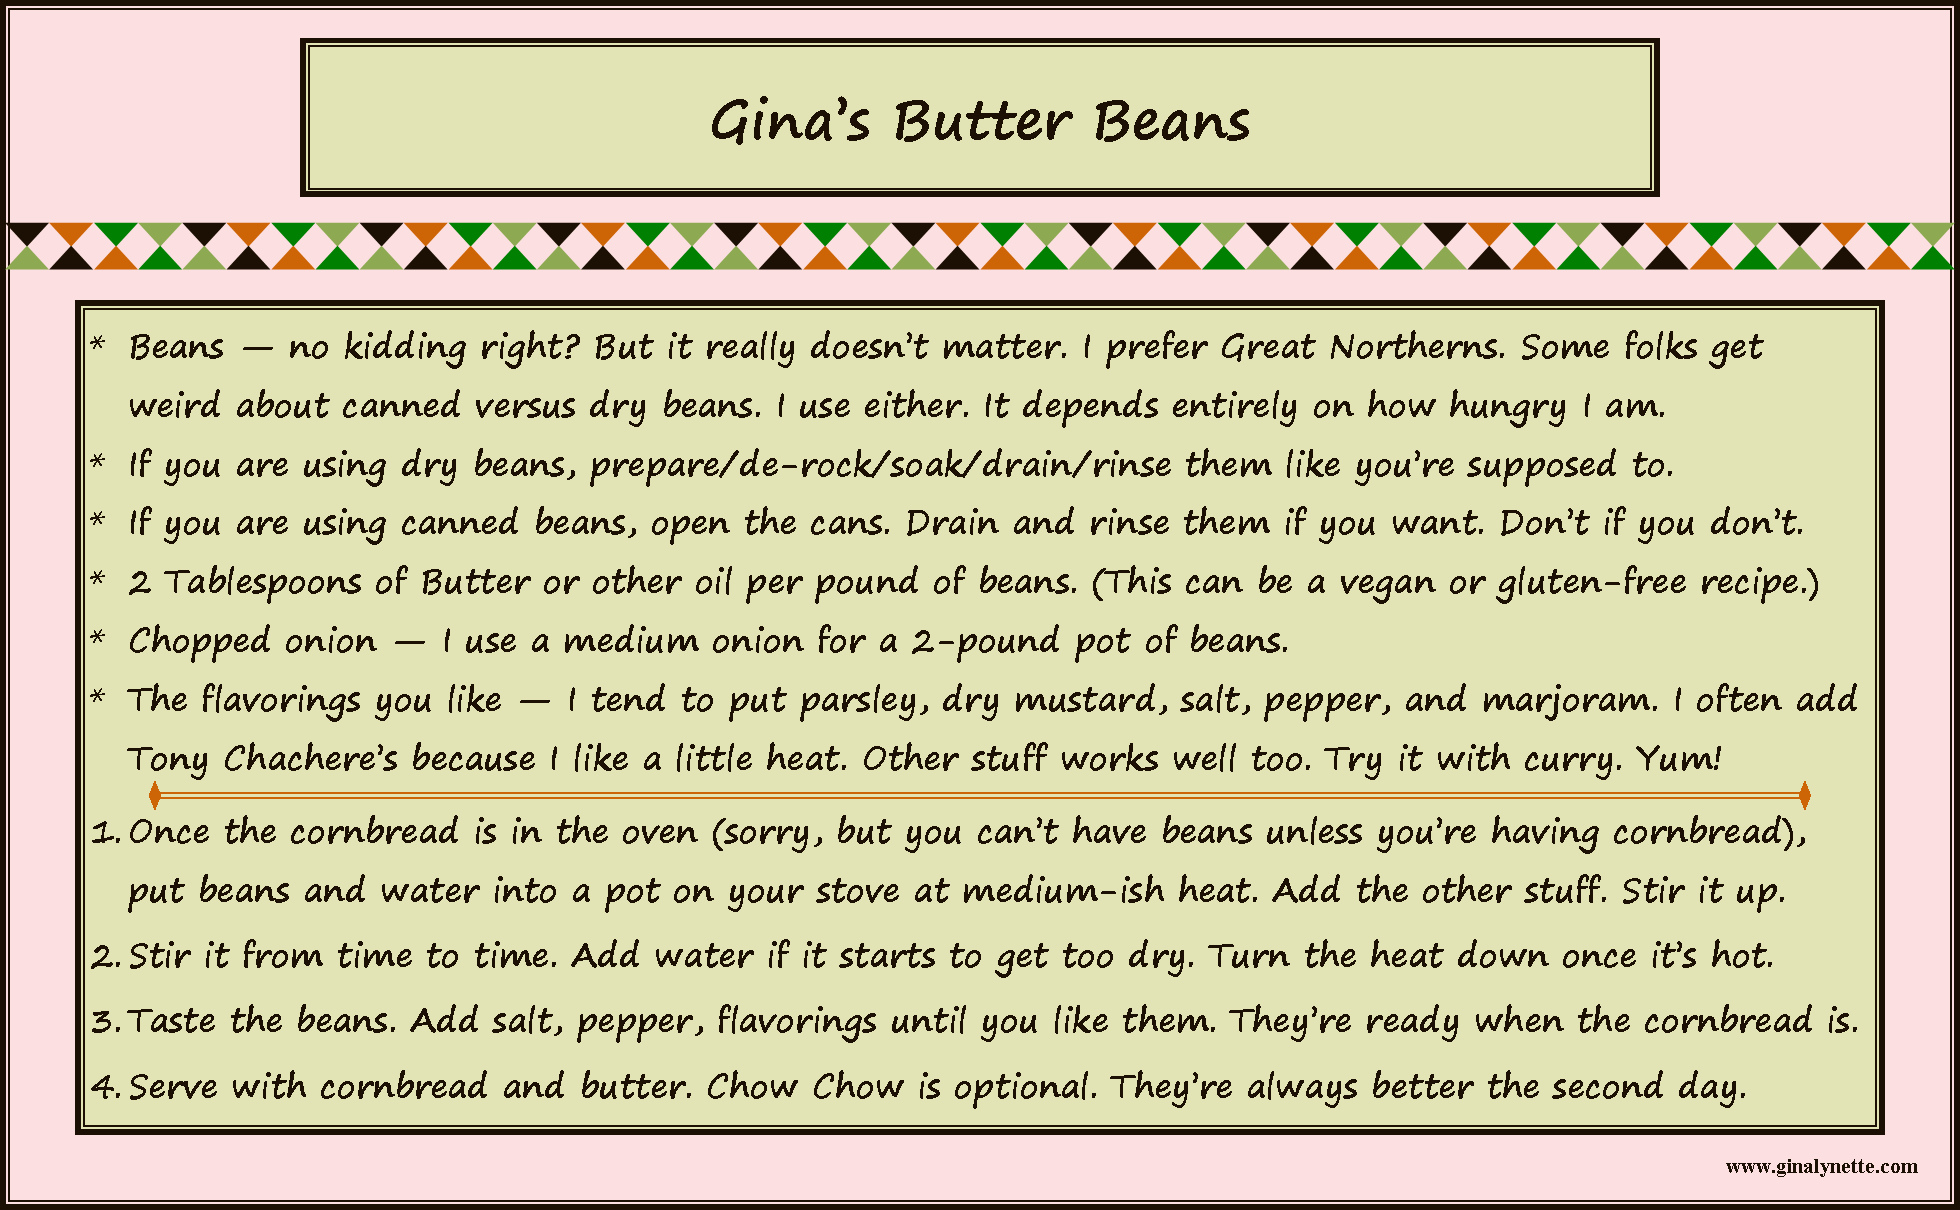 Gina's Butter Beans